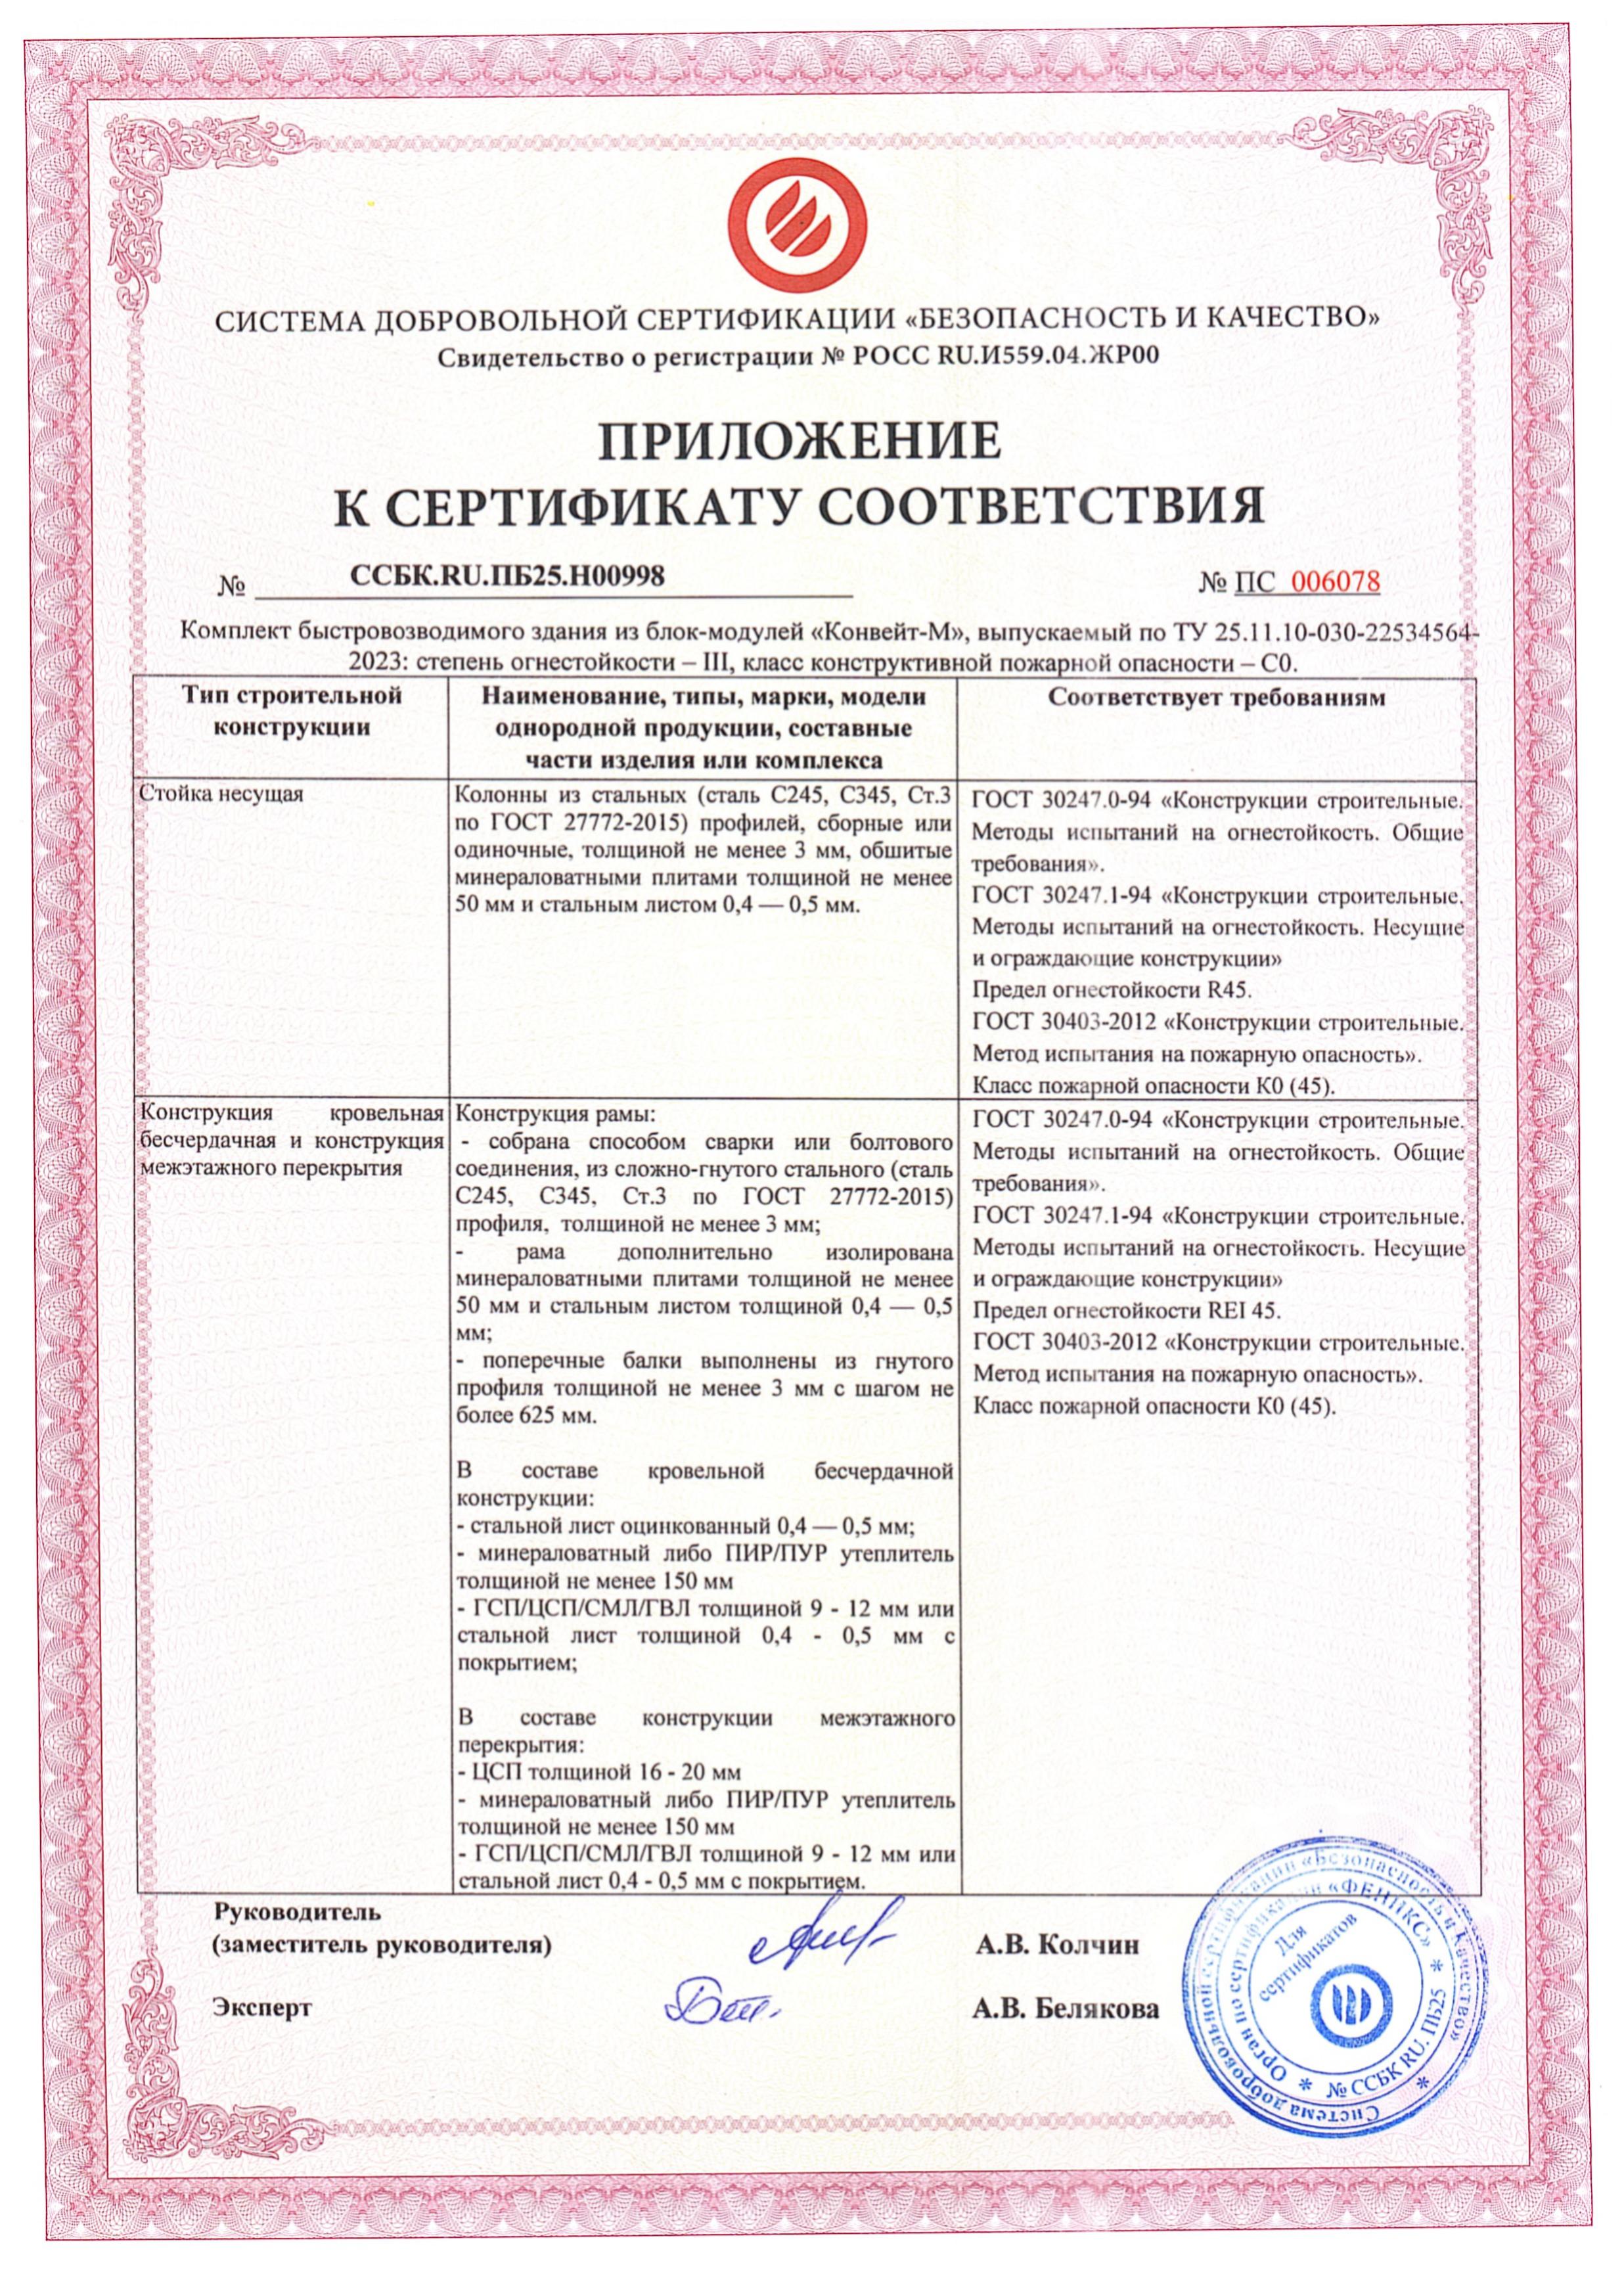 Приложение к сертификату соответствия требованиям пожарной безопасности стр.1